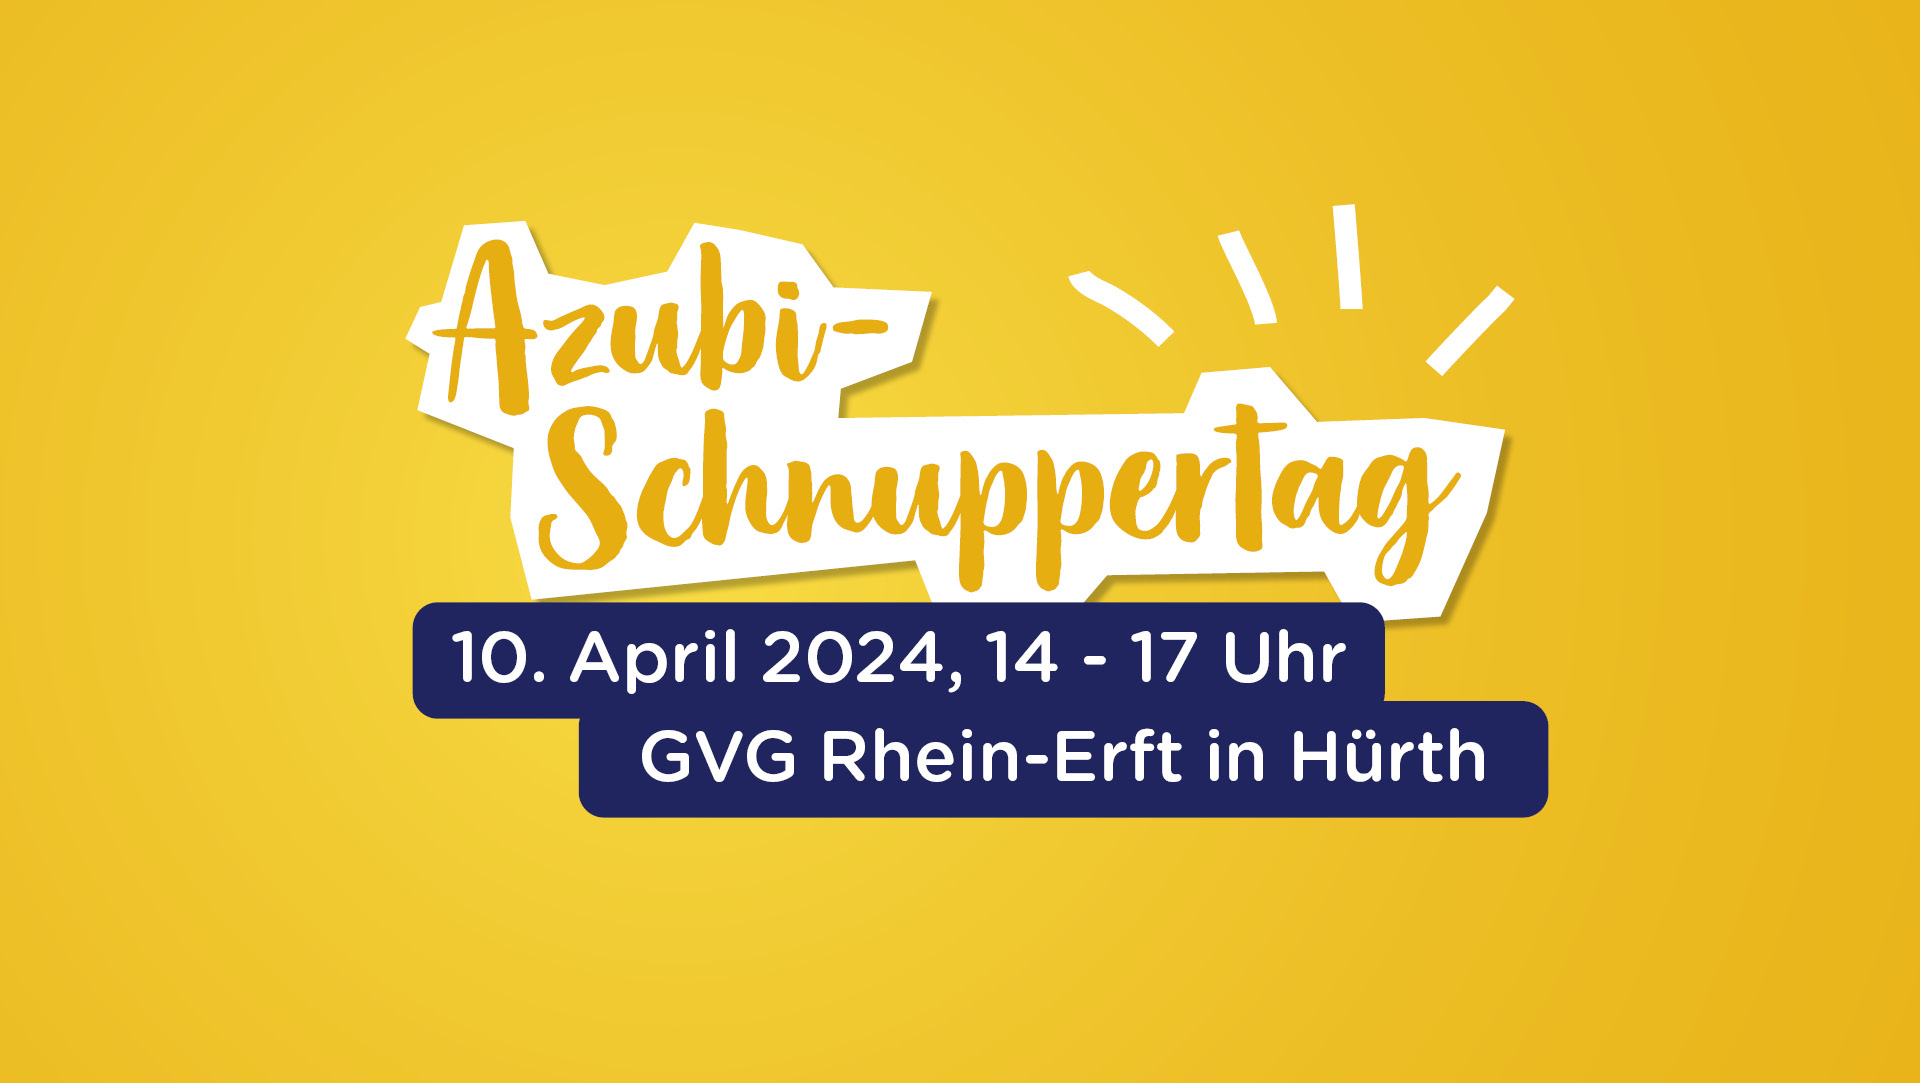 Azubi-Schnuppertag bei der GVG-Rhein-Erft: Jetzt anmelden 